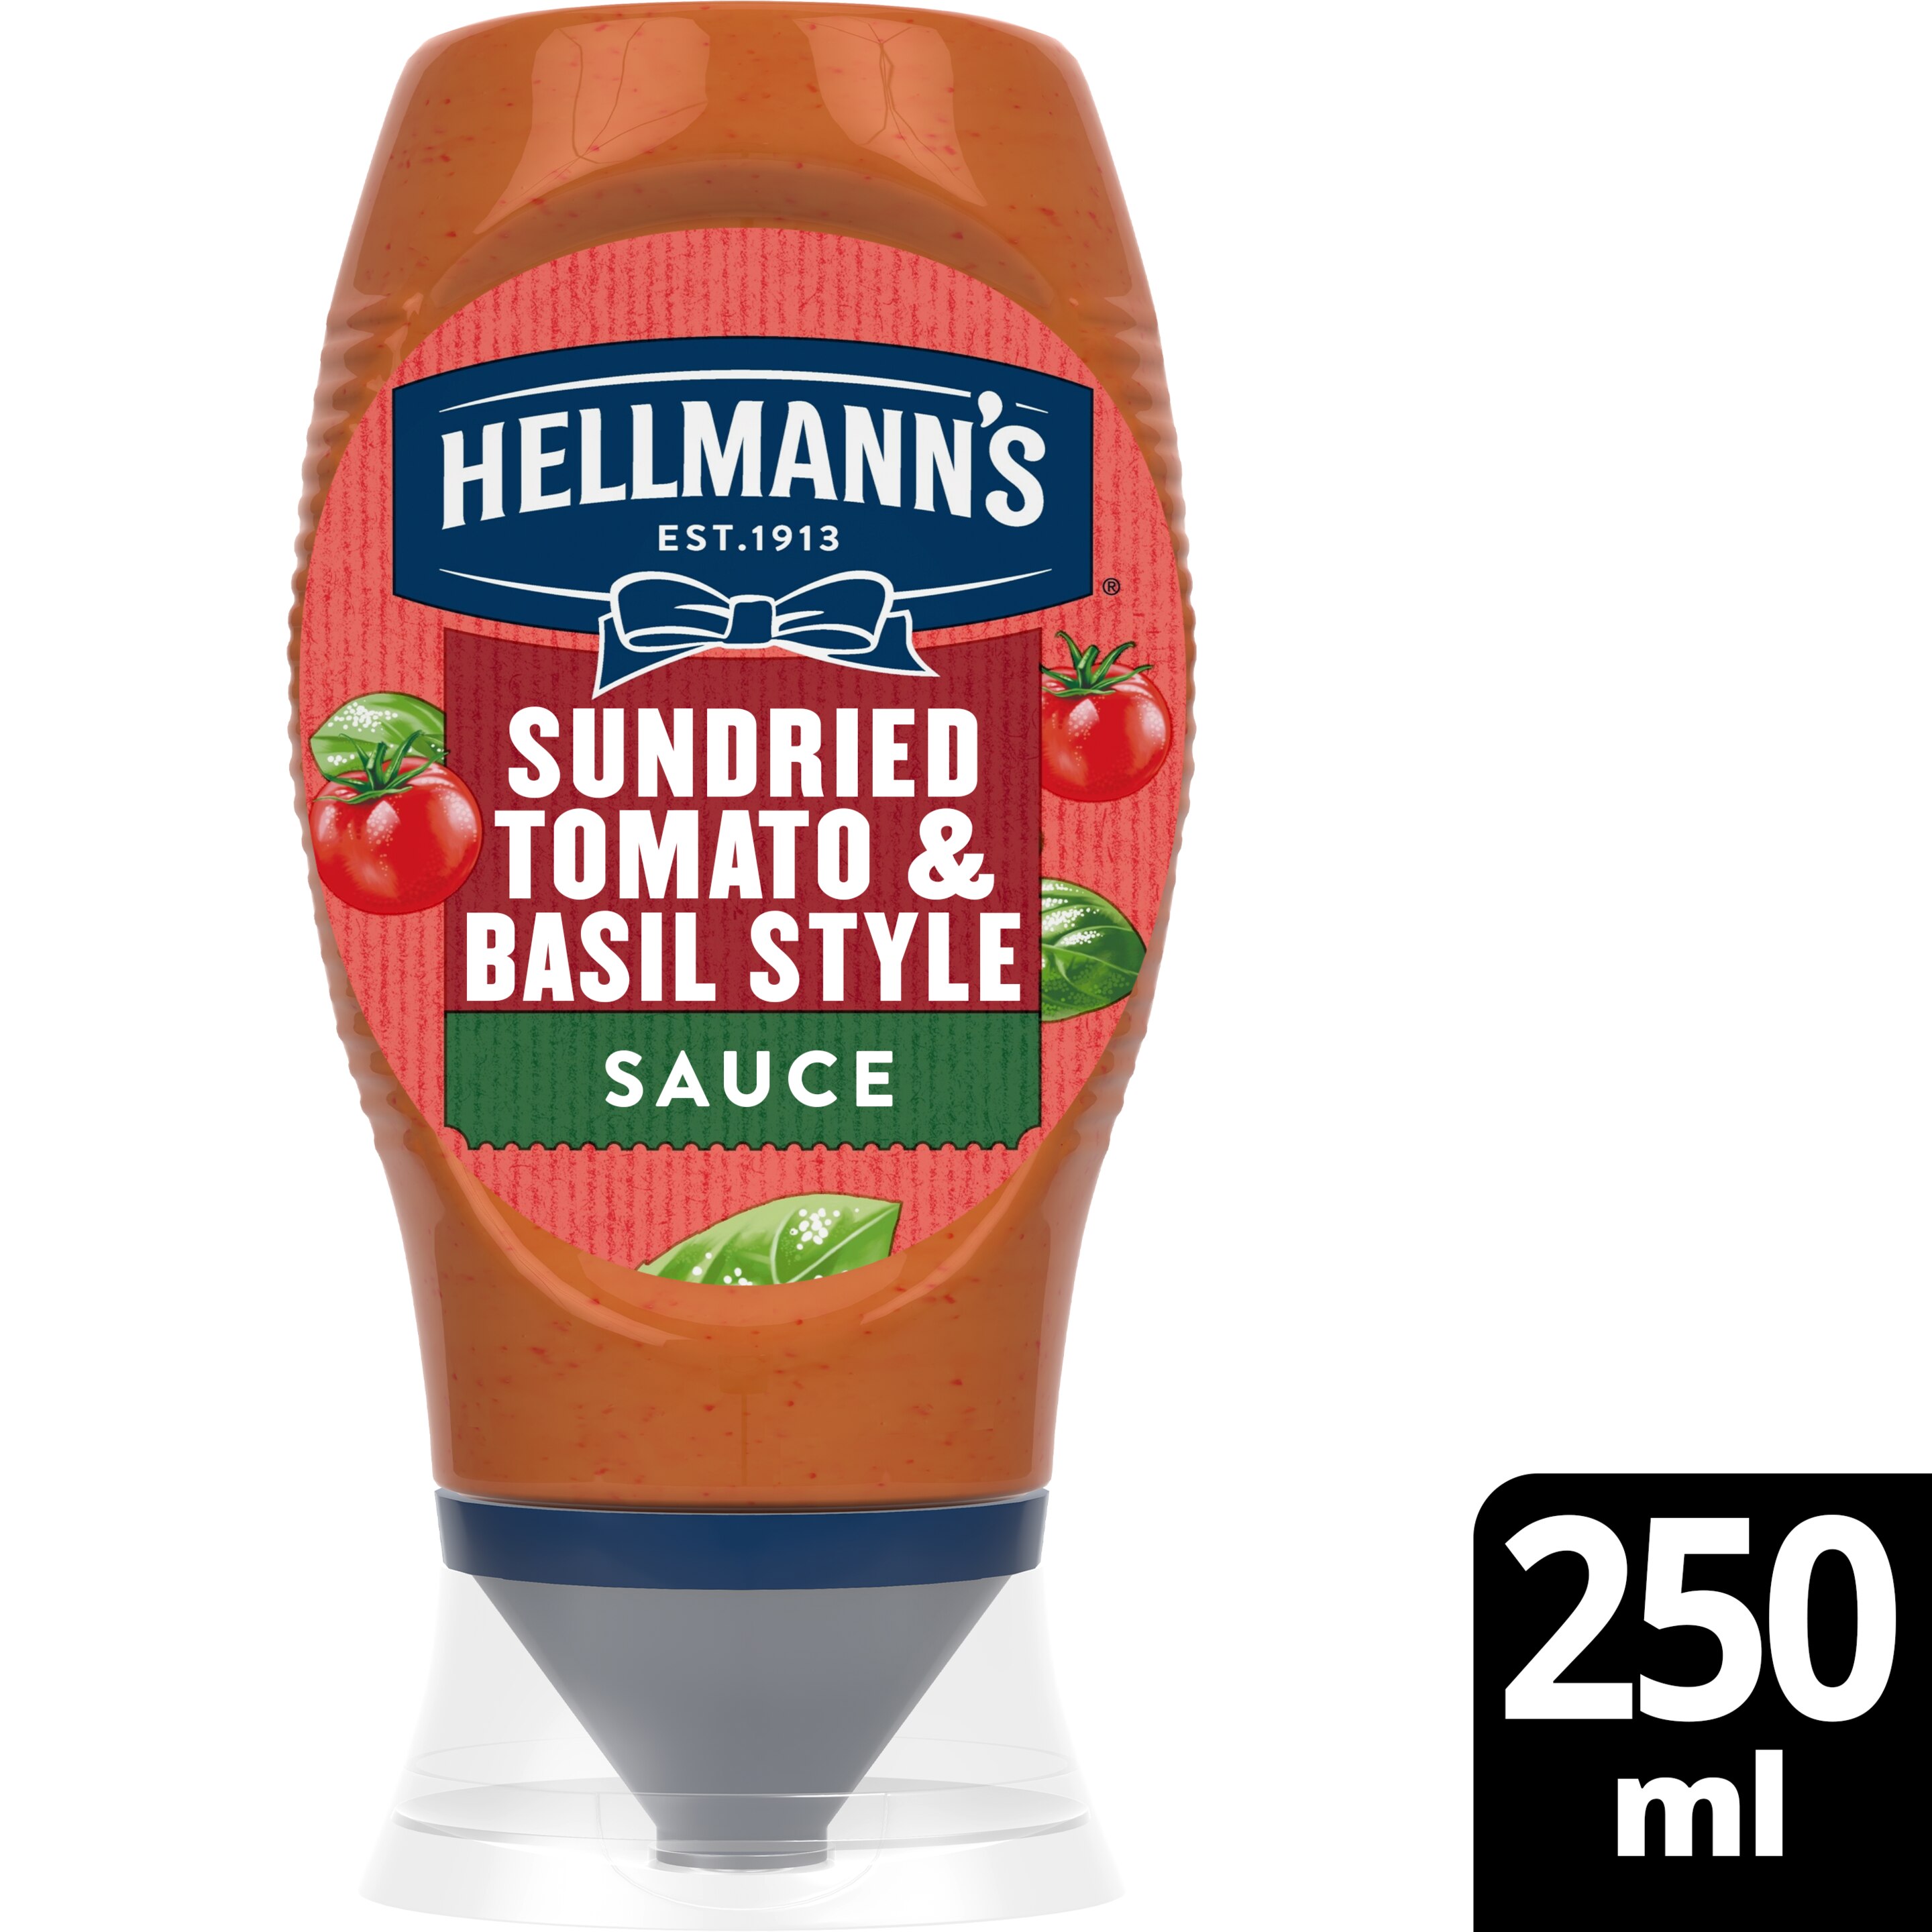 Hellmann's Sundried Tomato & Basil Style Sauce